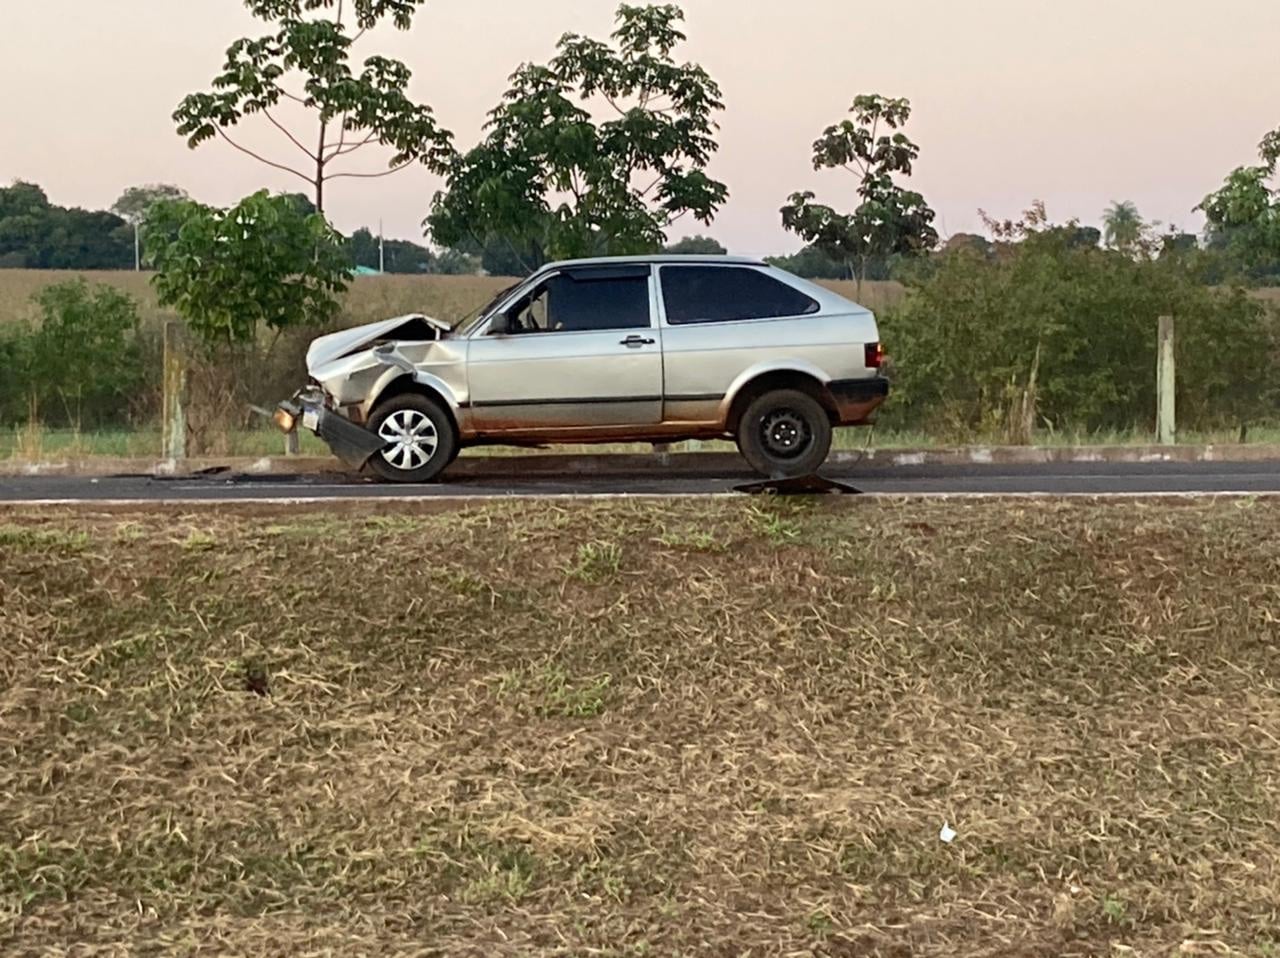 Guaíra - Veículos envolvidos em acidente com morte eram usados no contrabando, afirma polícia • Portal Guaíra